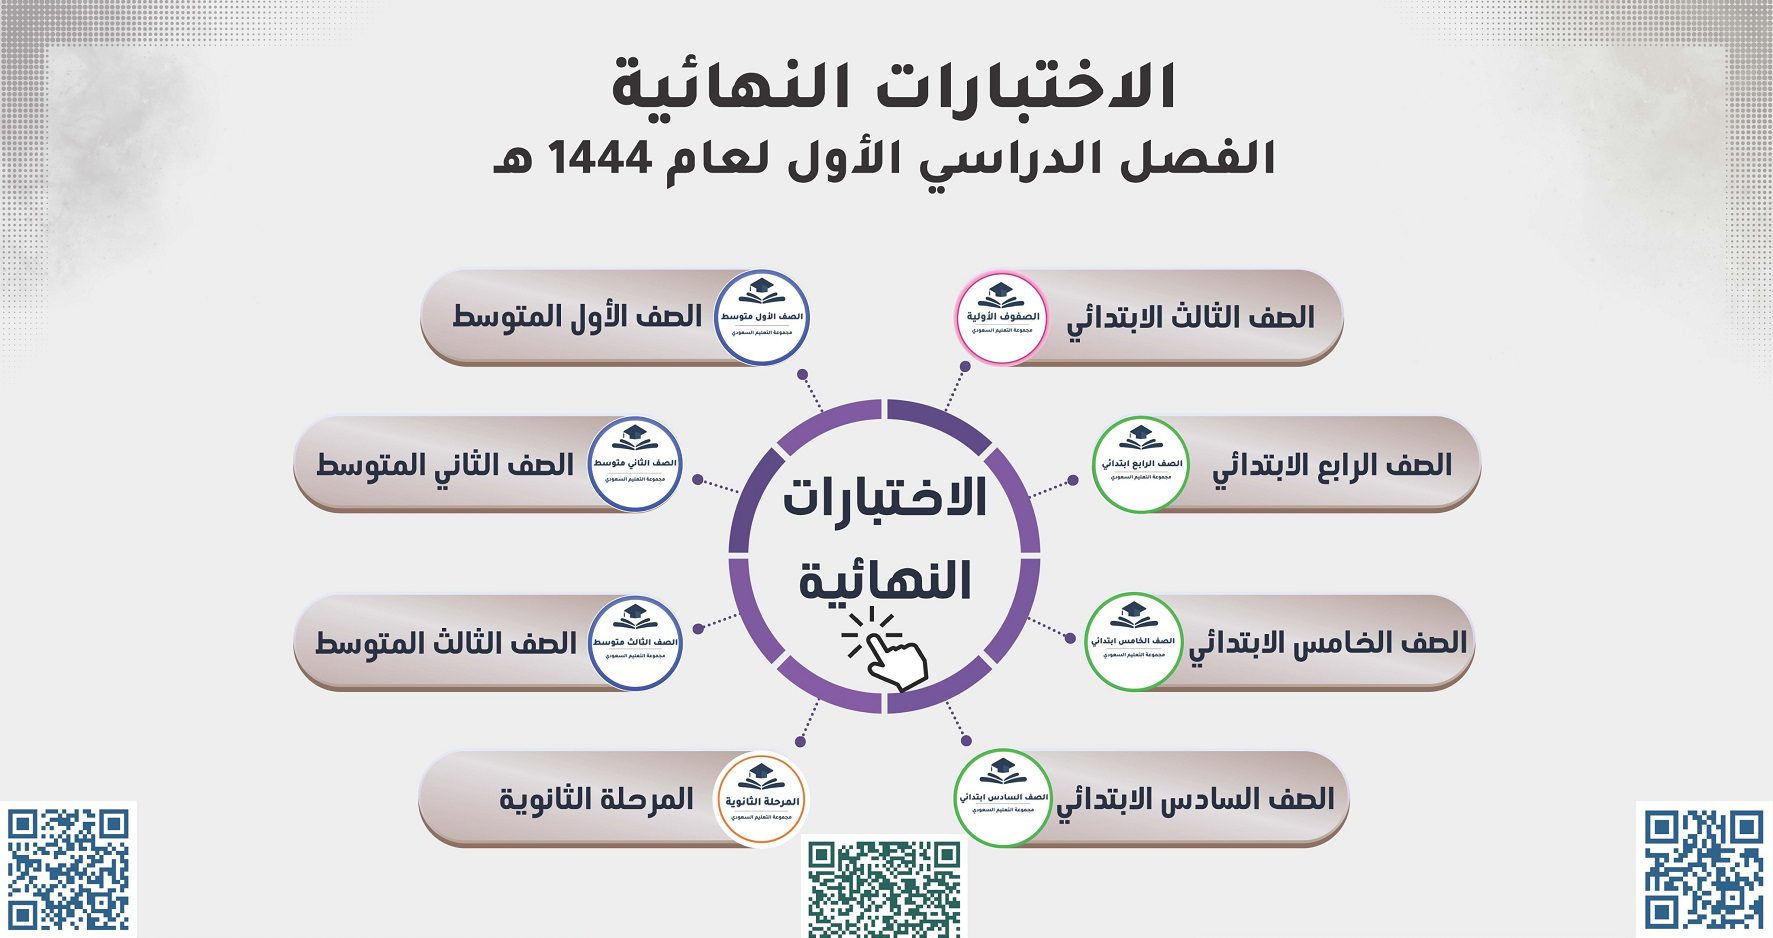 D8 A7 D9 84 D8 A7 D8 AE D8 AA D8 A8 D8 A7 D8 B1 D8 A7 D8 AA 1 1 - موعد الاختبارات النهائية 1444 وجدول التقويم الدراسي في المملكة العربية السعودية - ثقفني